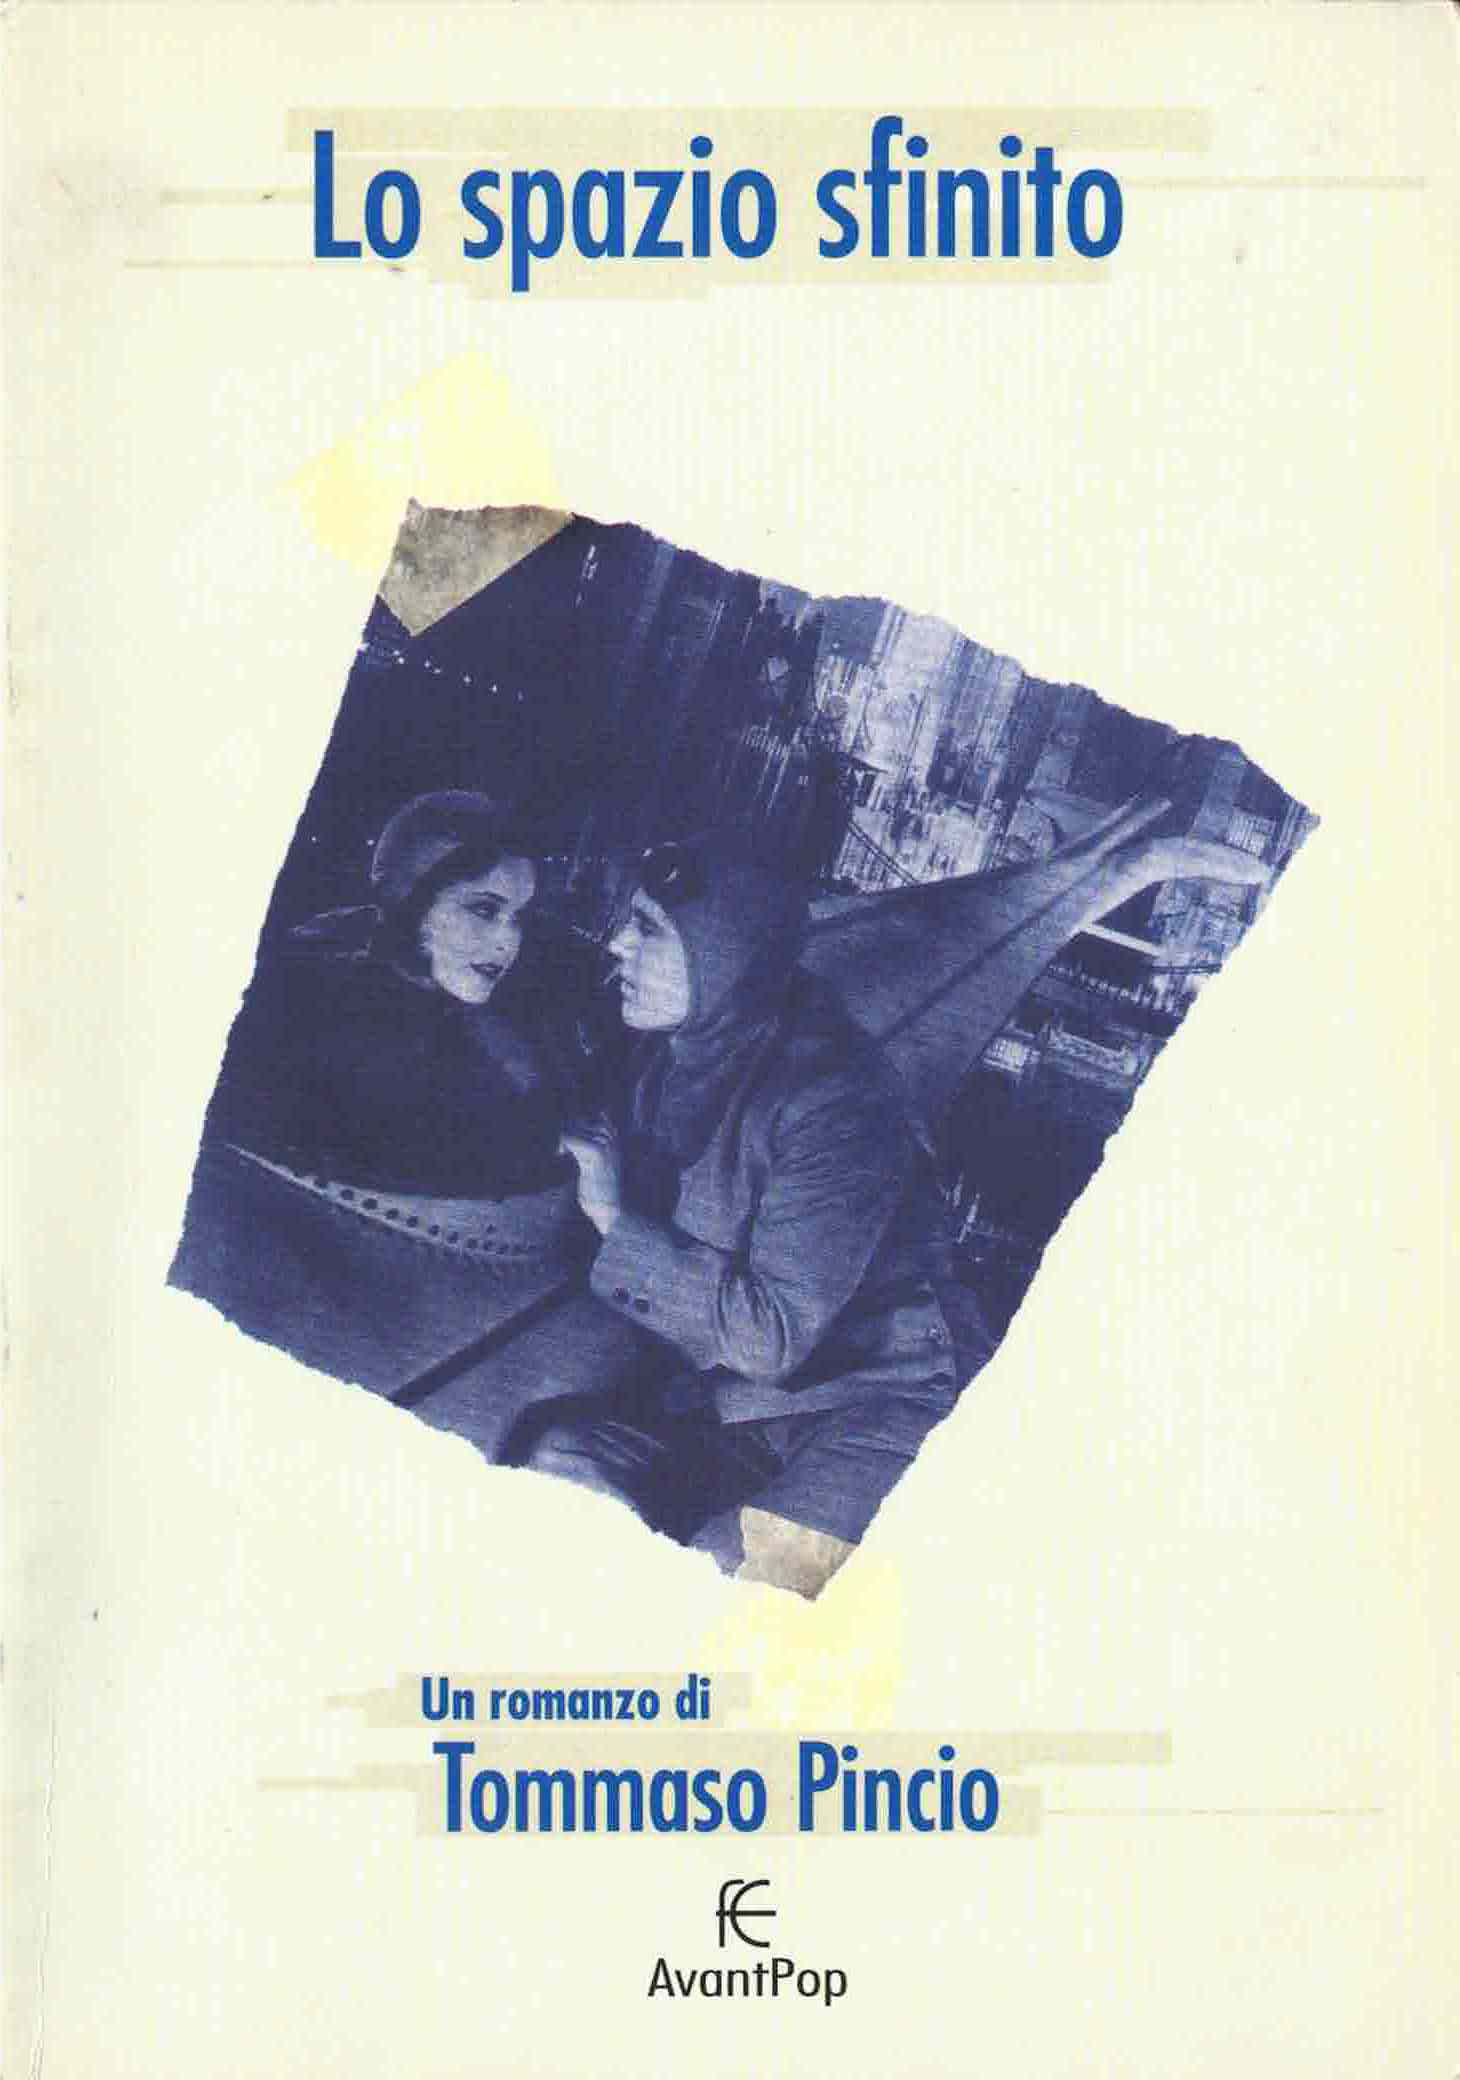 Tommaso Pincio, Lo spazio sfinito, 2000